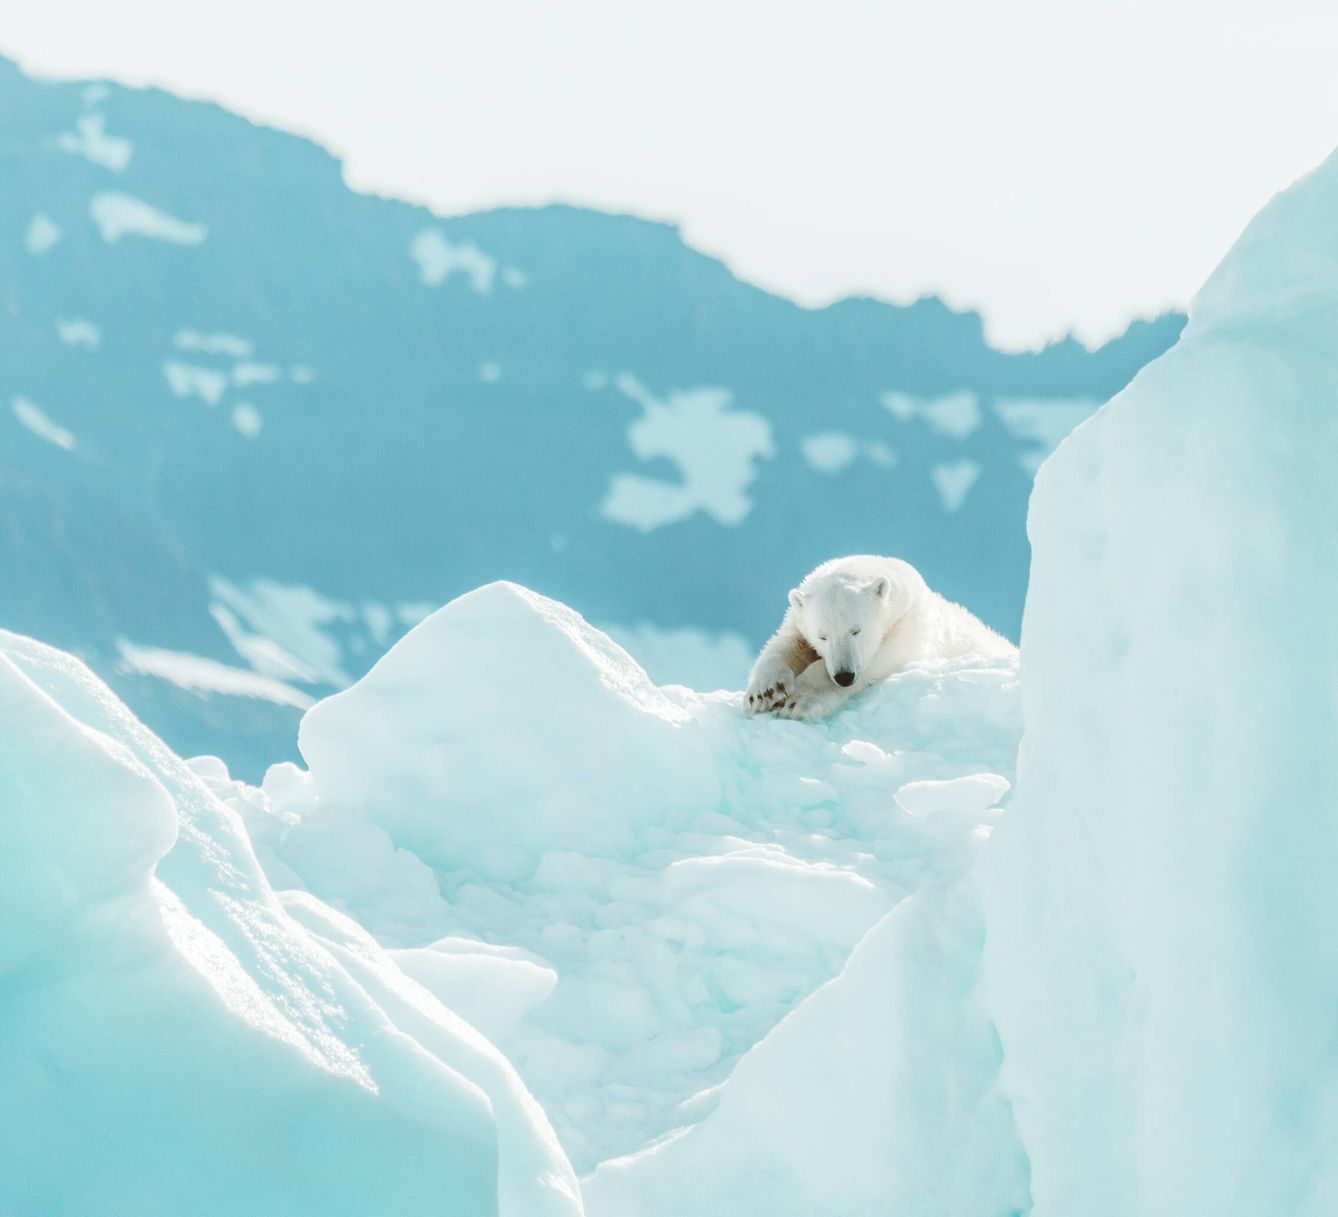 Un oso polar, una de las especies más amenazadas por el cambio climático. Foto: Unsplash